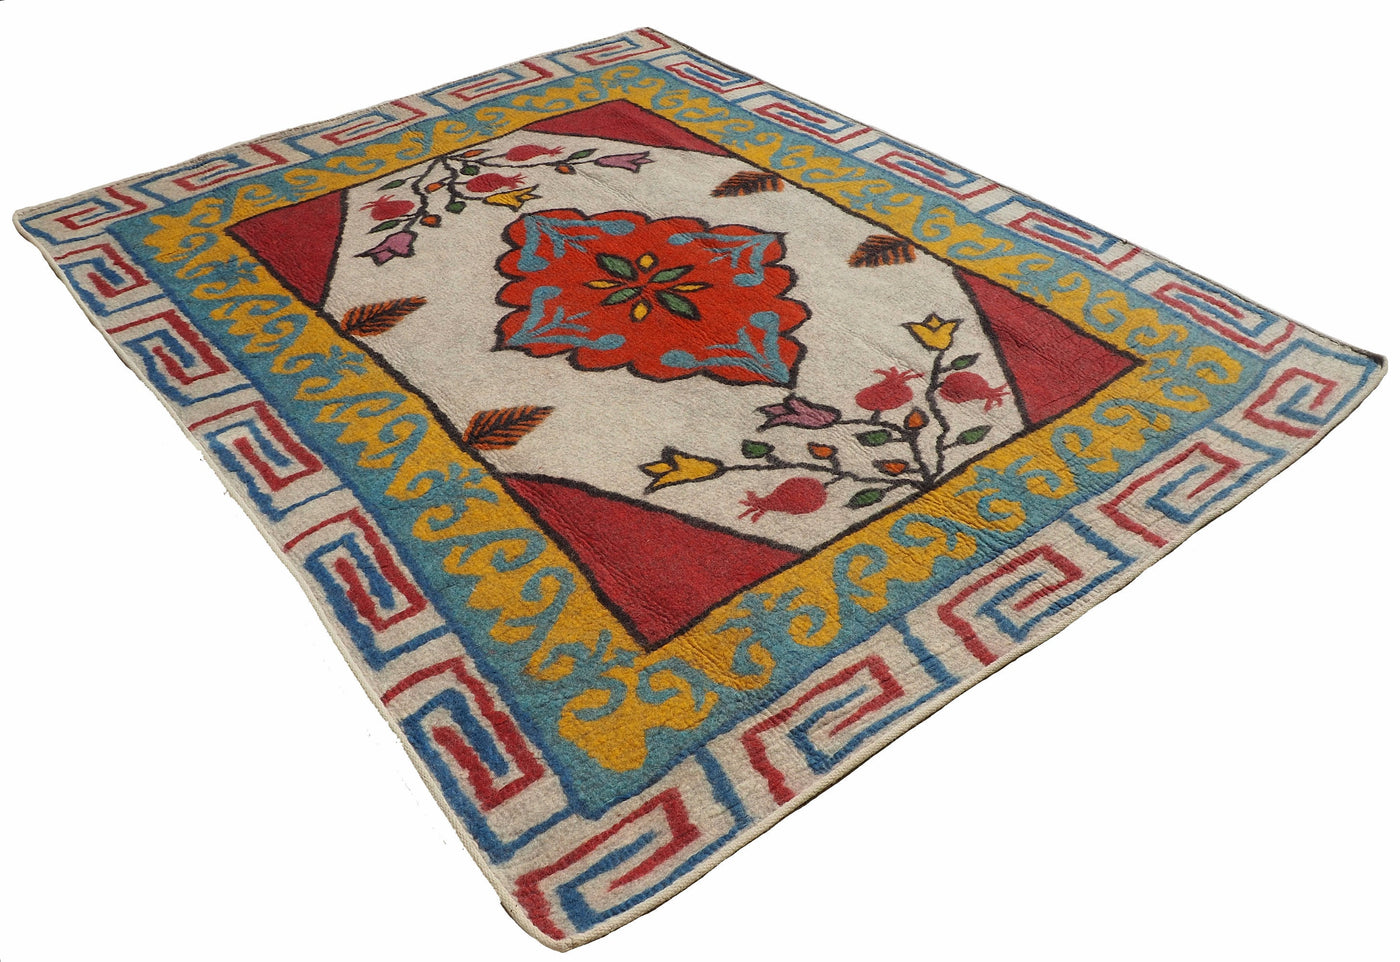 253x199 cm orient handgewebte Teppich Nomaden handgearbeitete Turkmenische nomanden Jurten Filzteppich Filz aus Nor Afghanistan shyrdak N705  Orientsbazar   